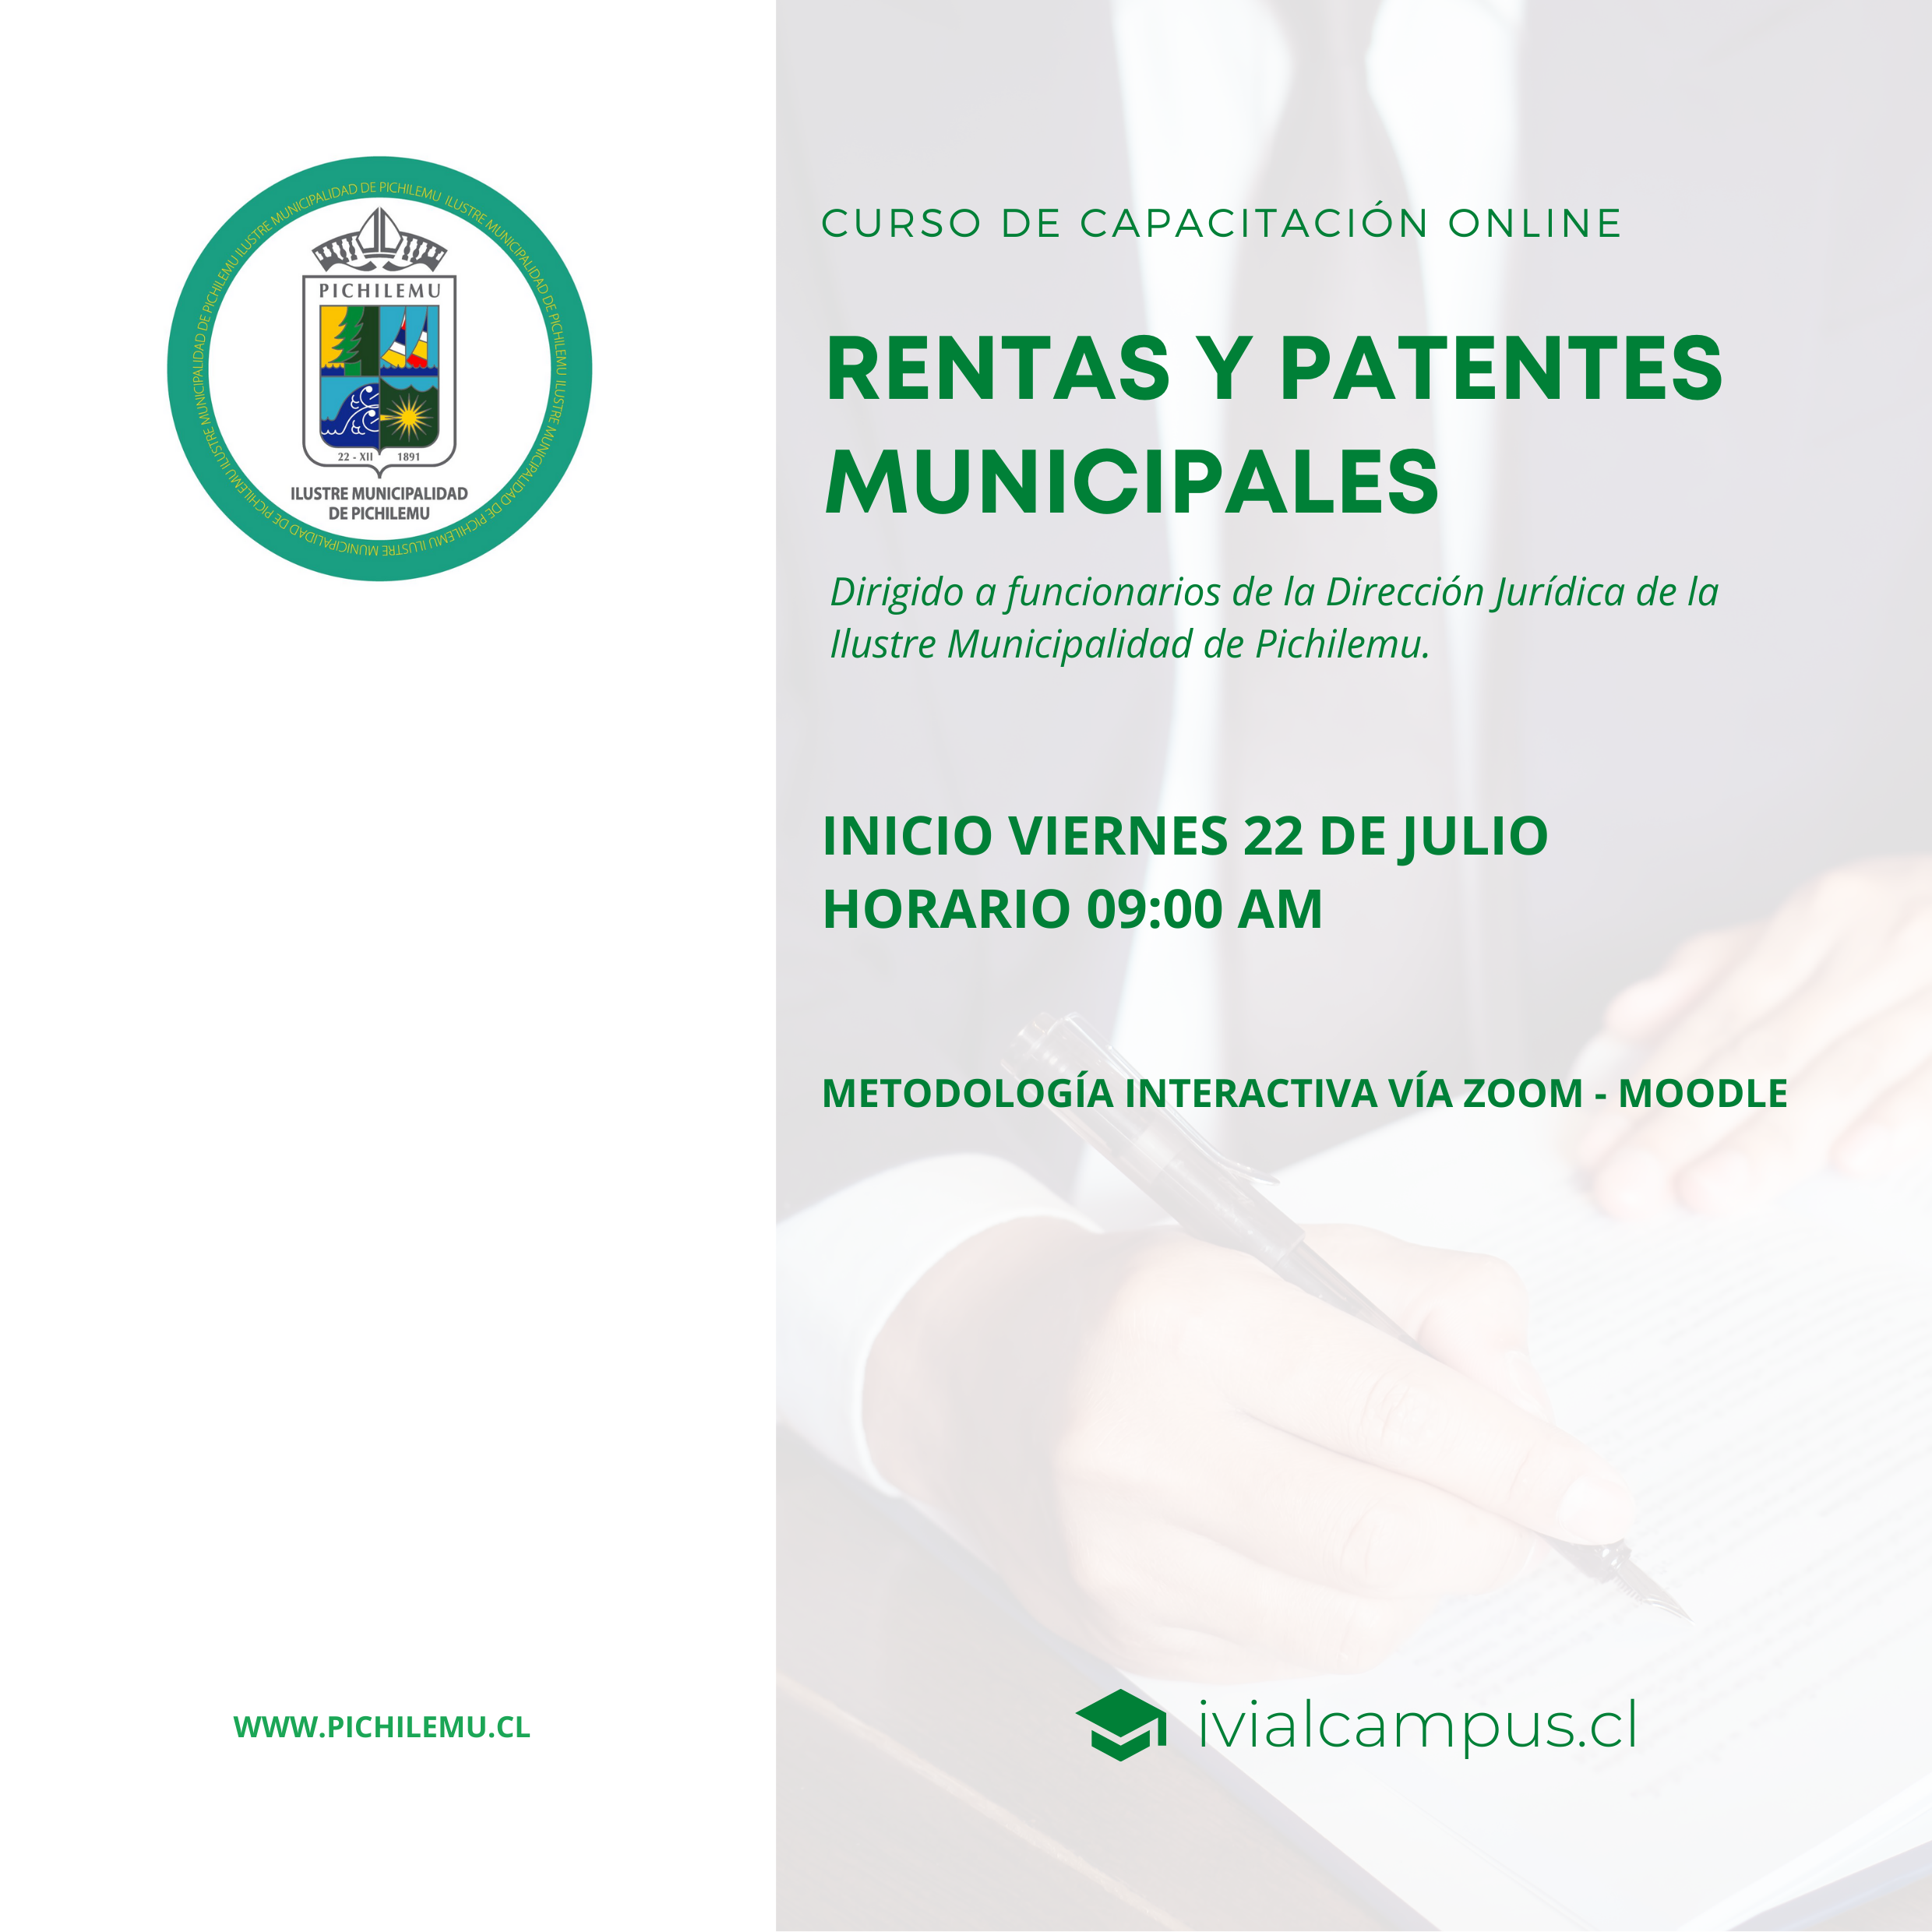 ILUSTRE MUNICIPALIDAD DE PICHILEMU: Rentas y Patentes Municipales Dirección Jurídica